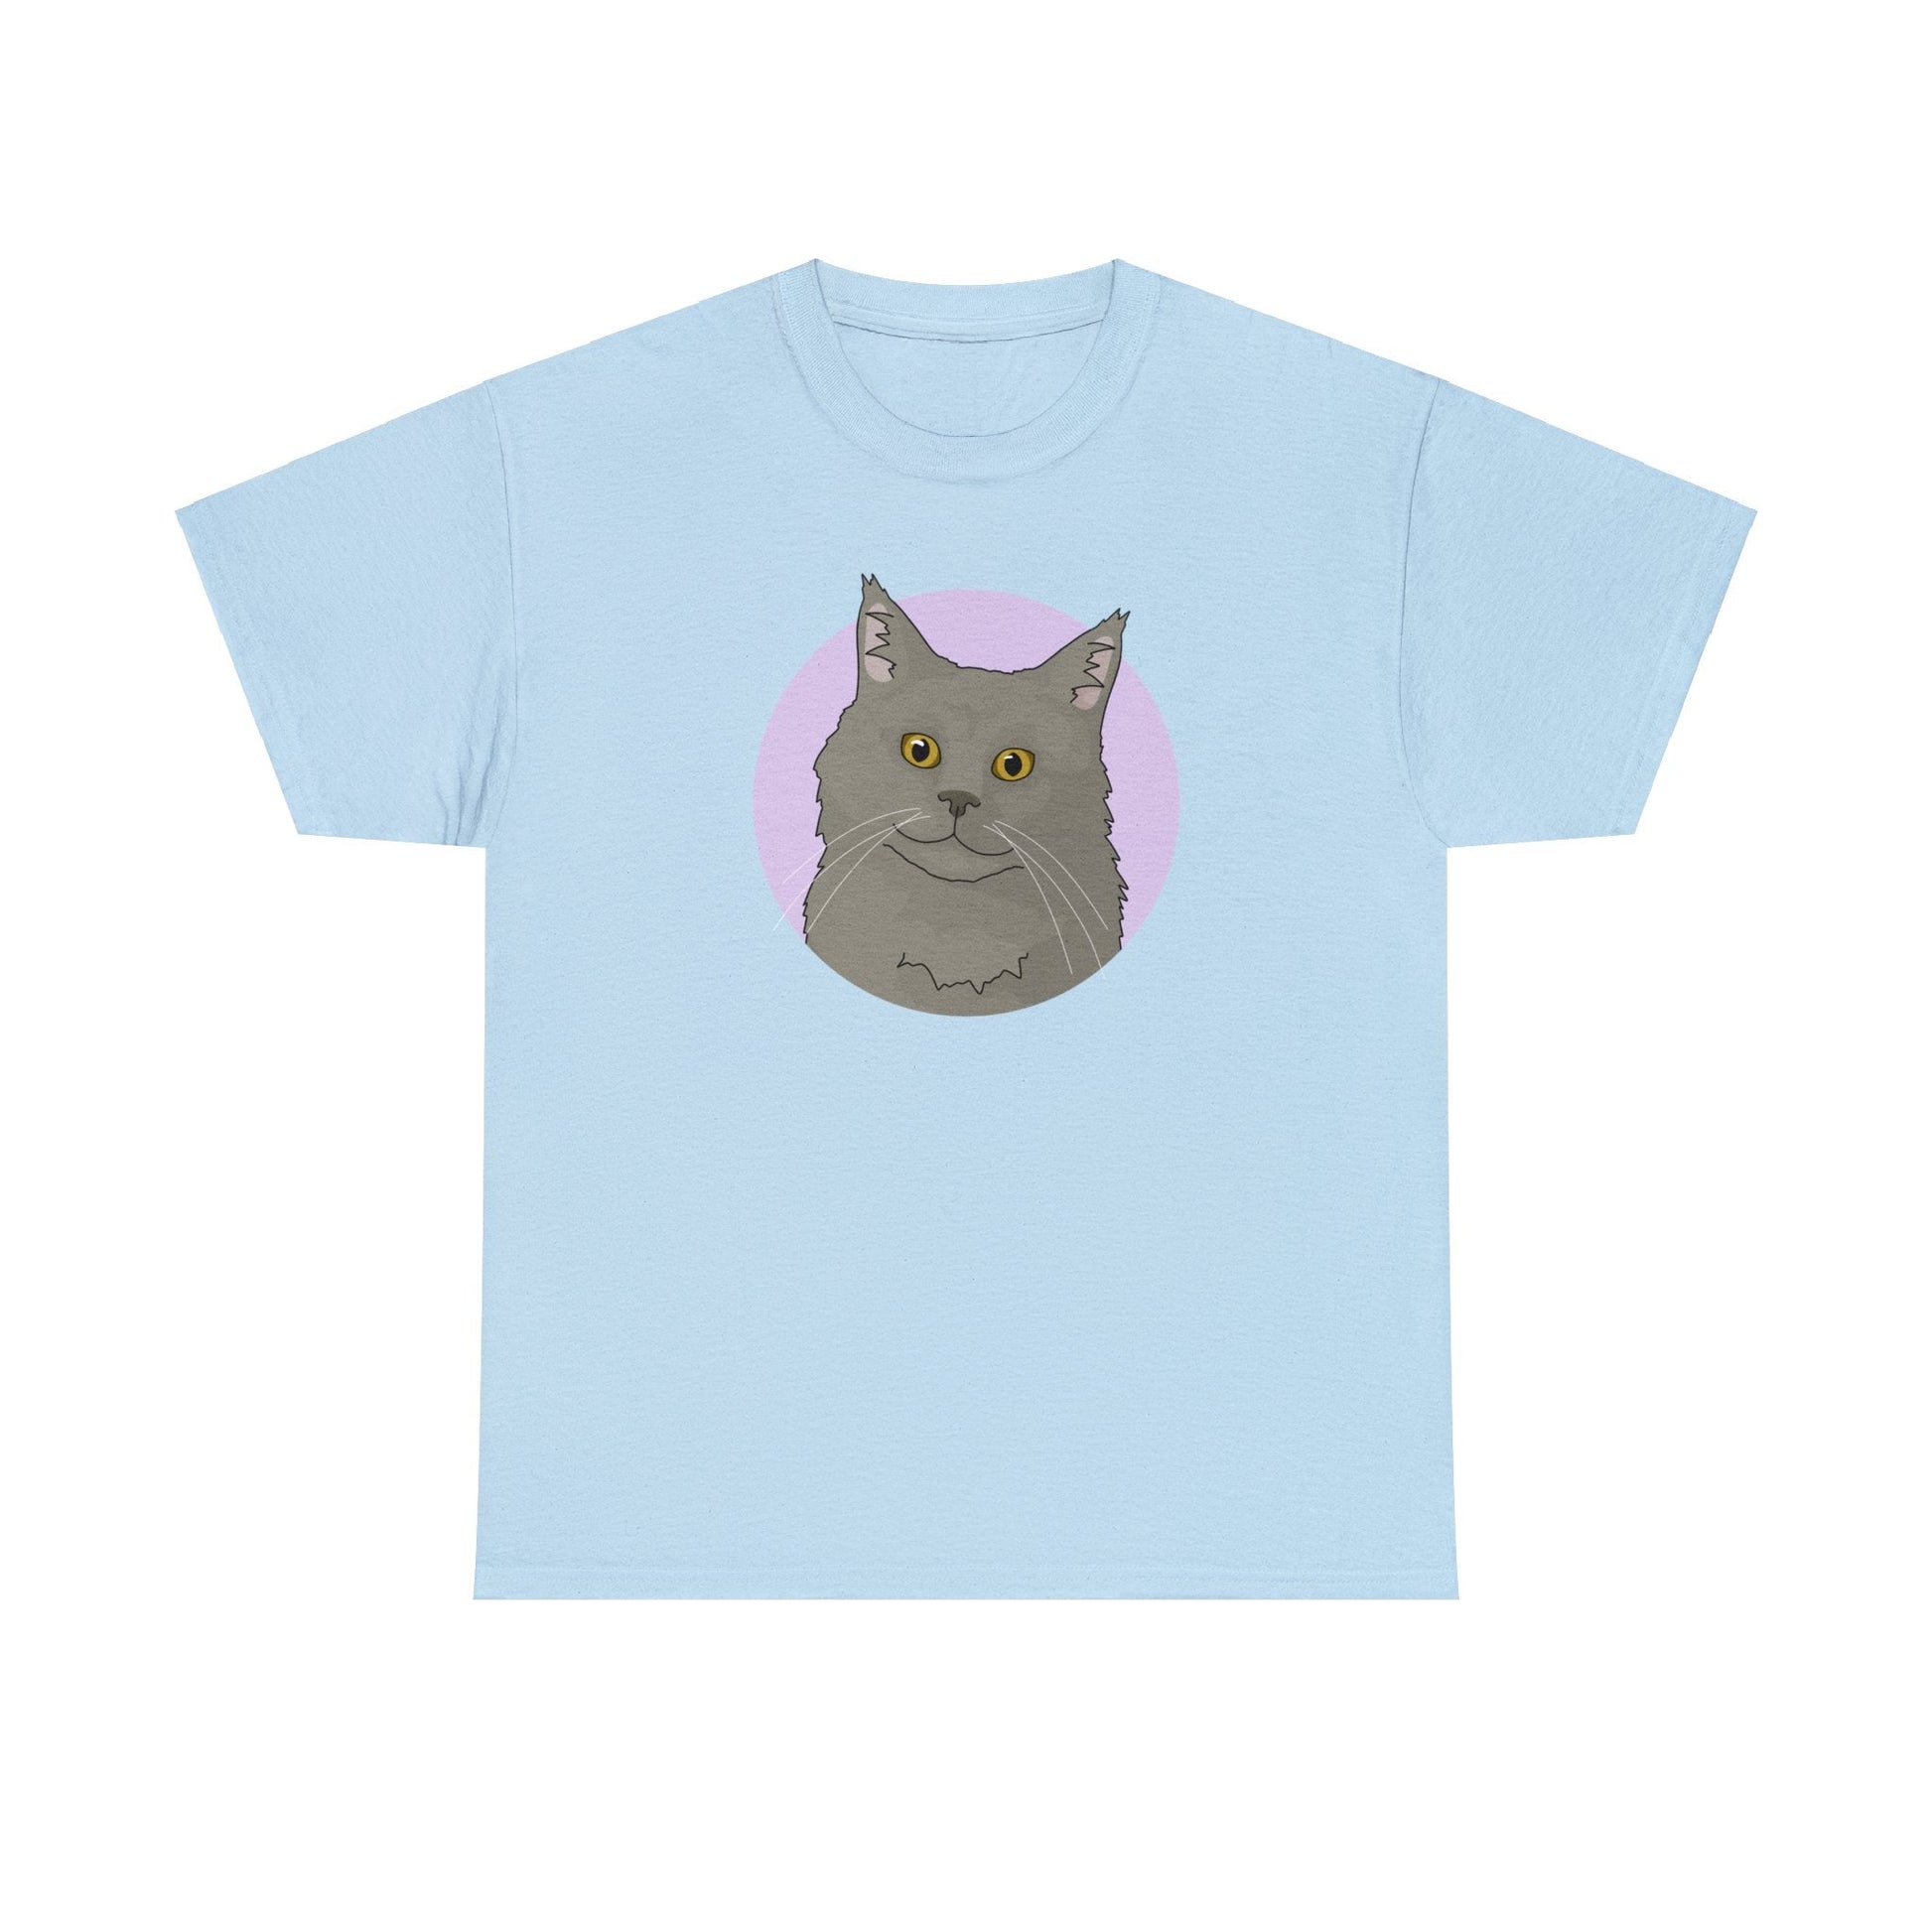 Maine Coon | T-shirt - Detezi Designs-97738838220682308448